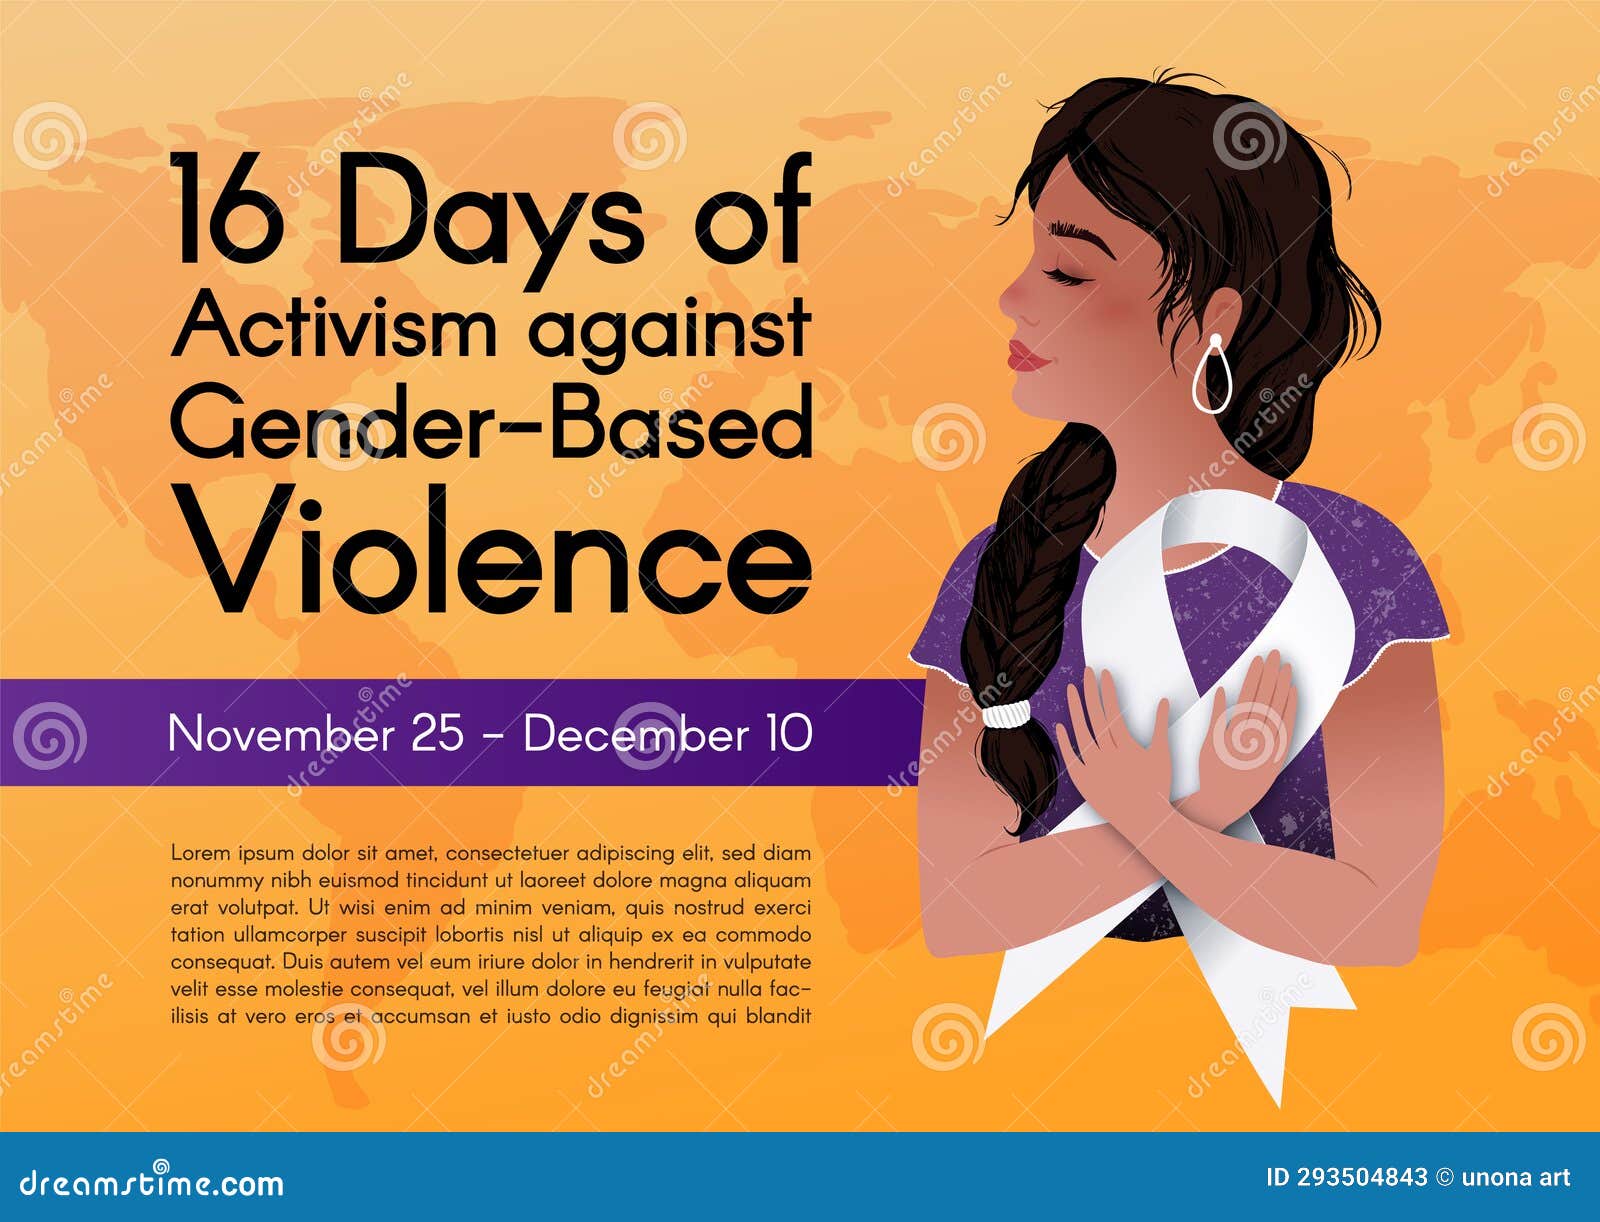 banner for 16 days of activism against gender-based violence.